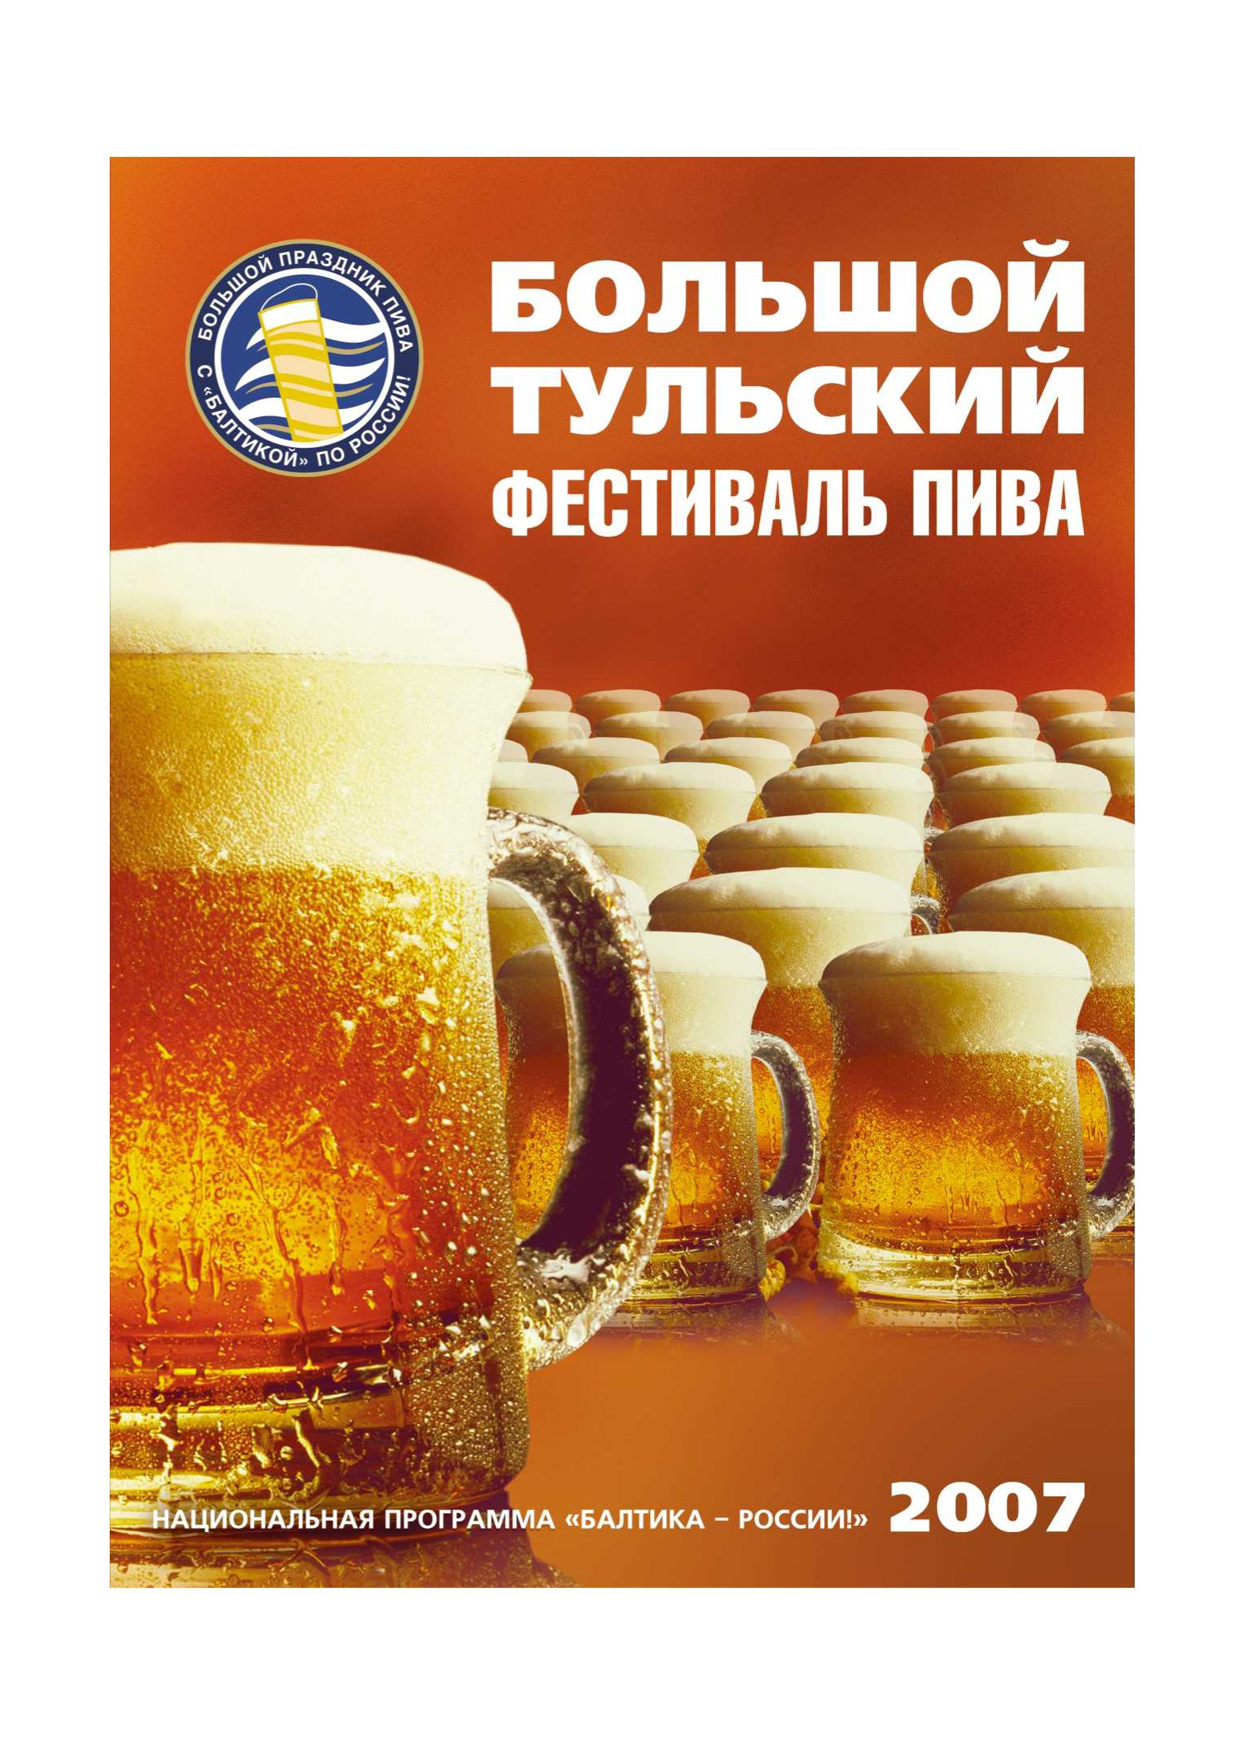 Плакат для фестиваля пива